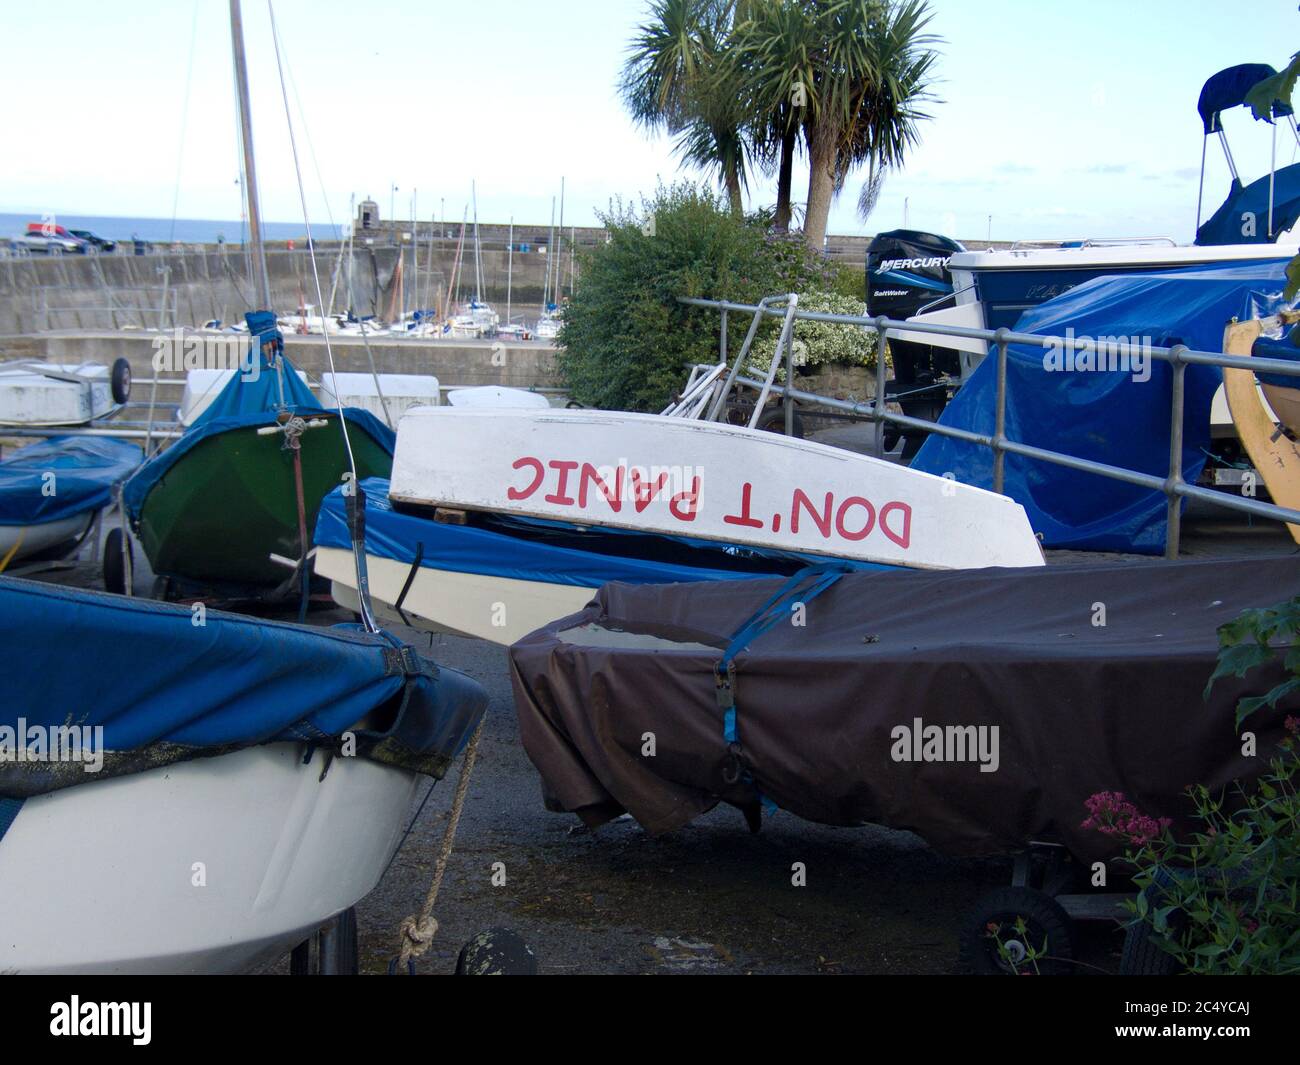 Una barca capovolta con dipinto "Do't Panic". Niente preoccupazioni, niente panico, calma, freddo, ottimista, strano, divertente, divertente Foto Stock